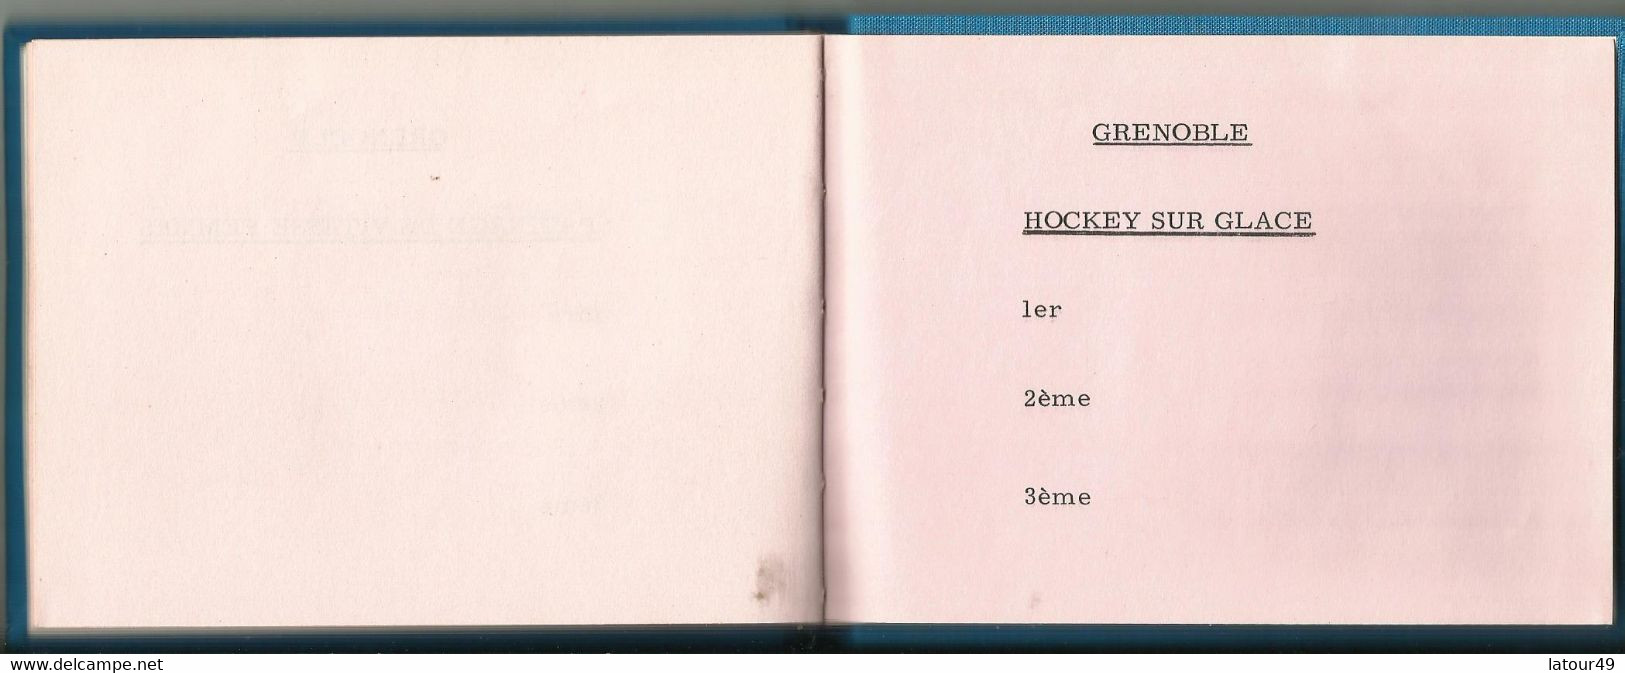 jeux olympique grenoble1968  autographes pologne.jozet kocjan crwin fredor etc. norvege bjorn wirkola porte drapeau etc